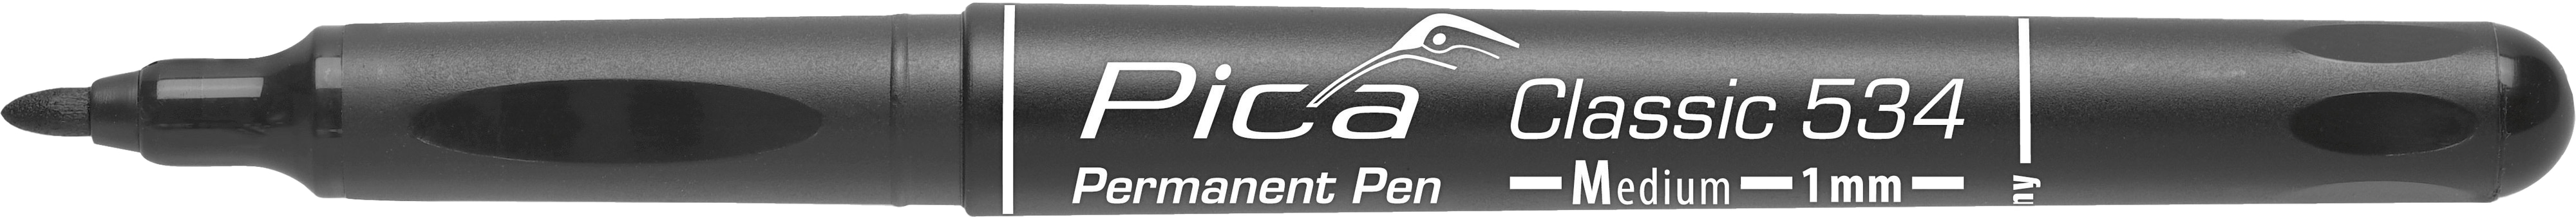 PICA Classic Permanent Pen, 534/46/SB, Medium, schwarz